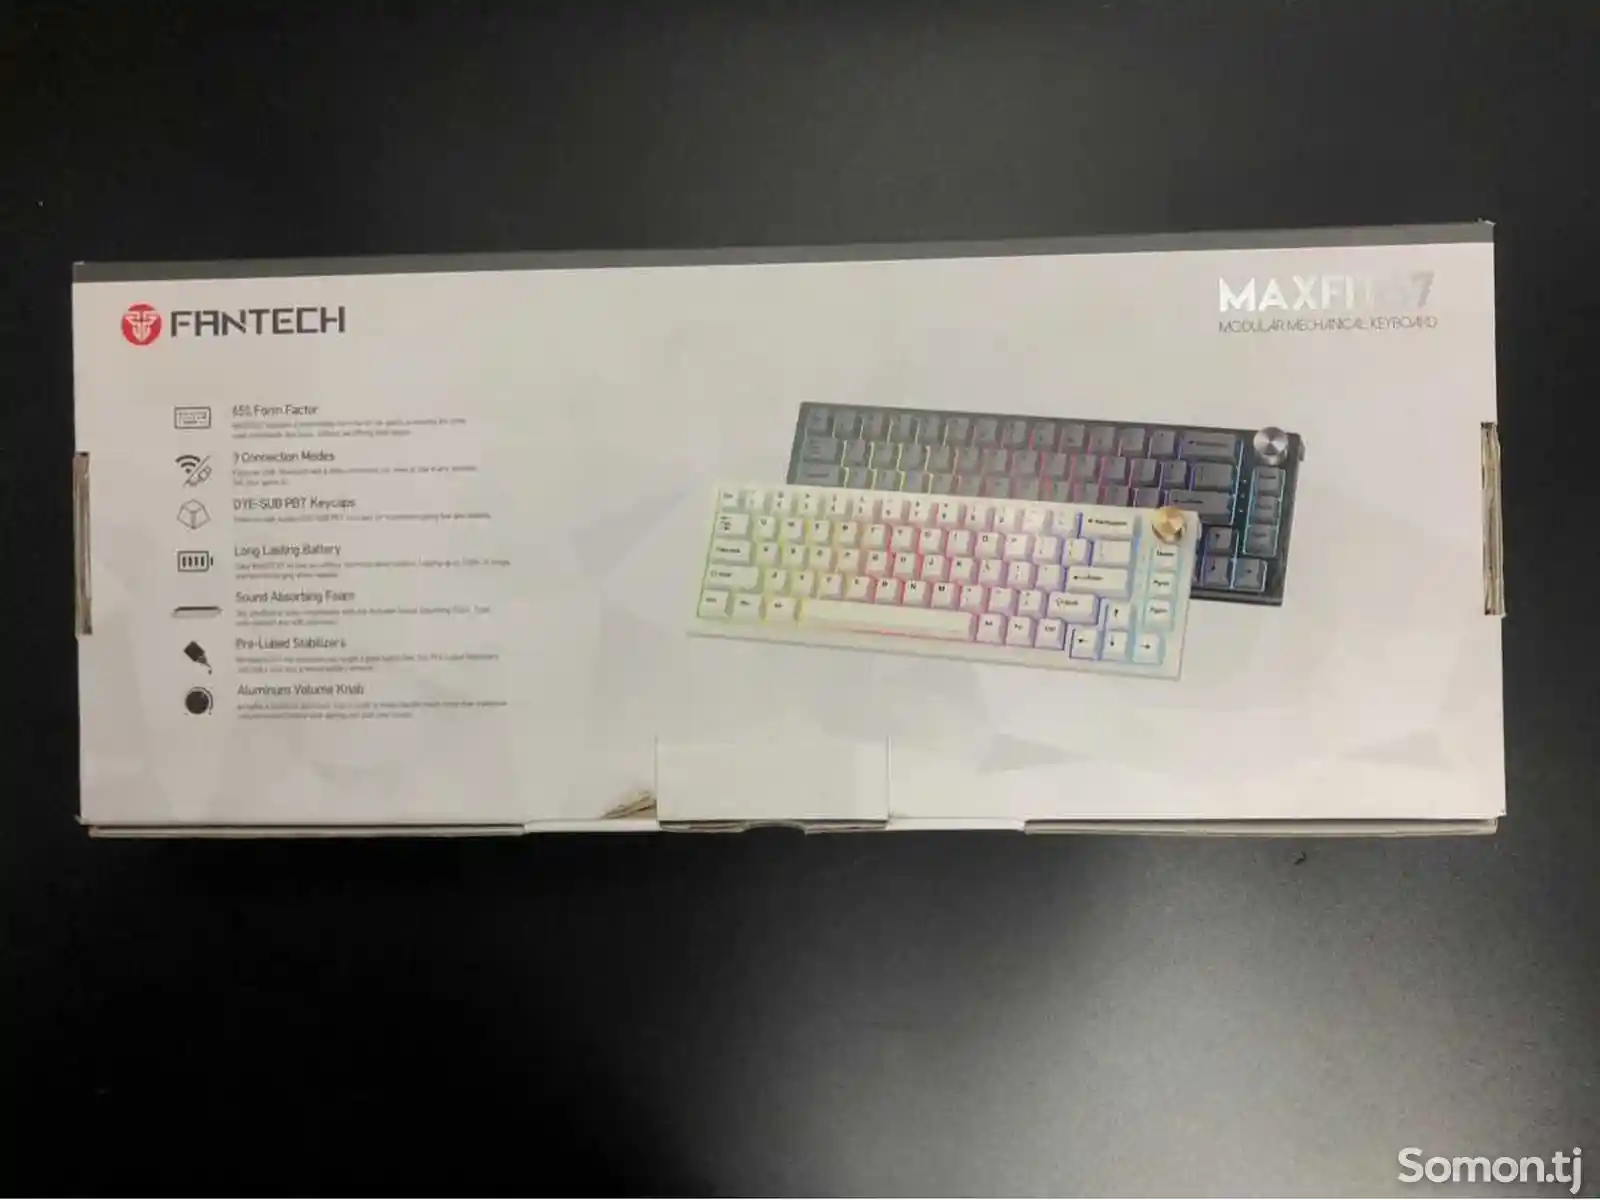 Беспроводная клавиатура Fantech Maxfit 67 с подсветкой RGB-5